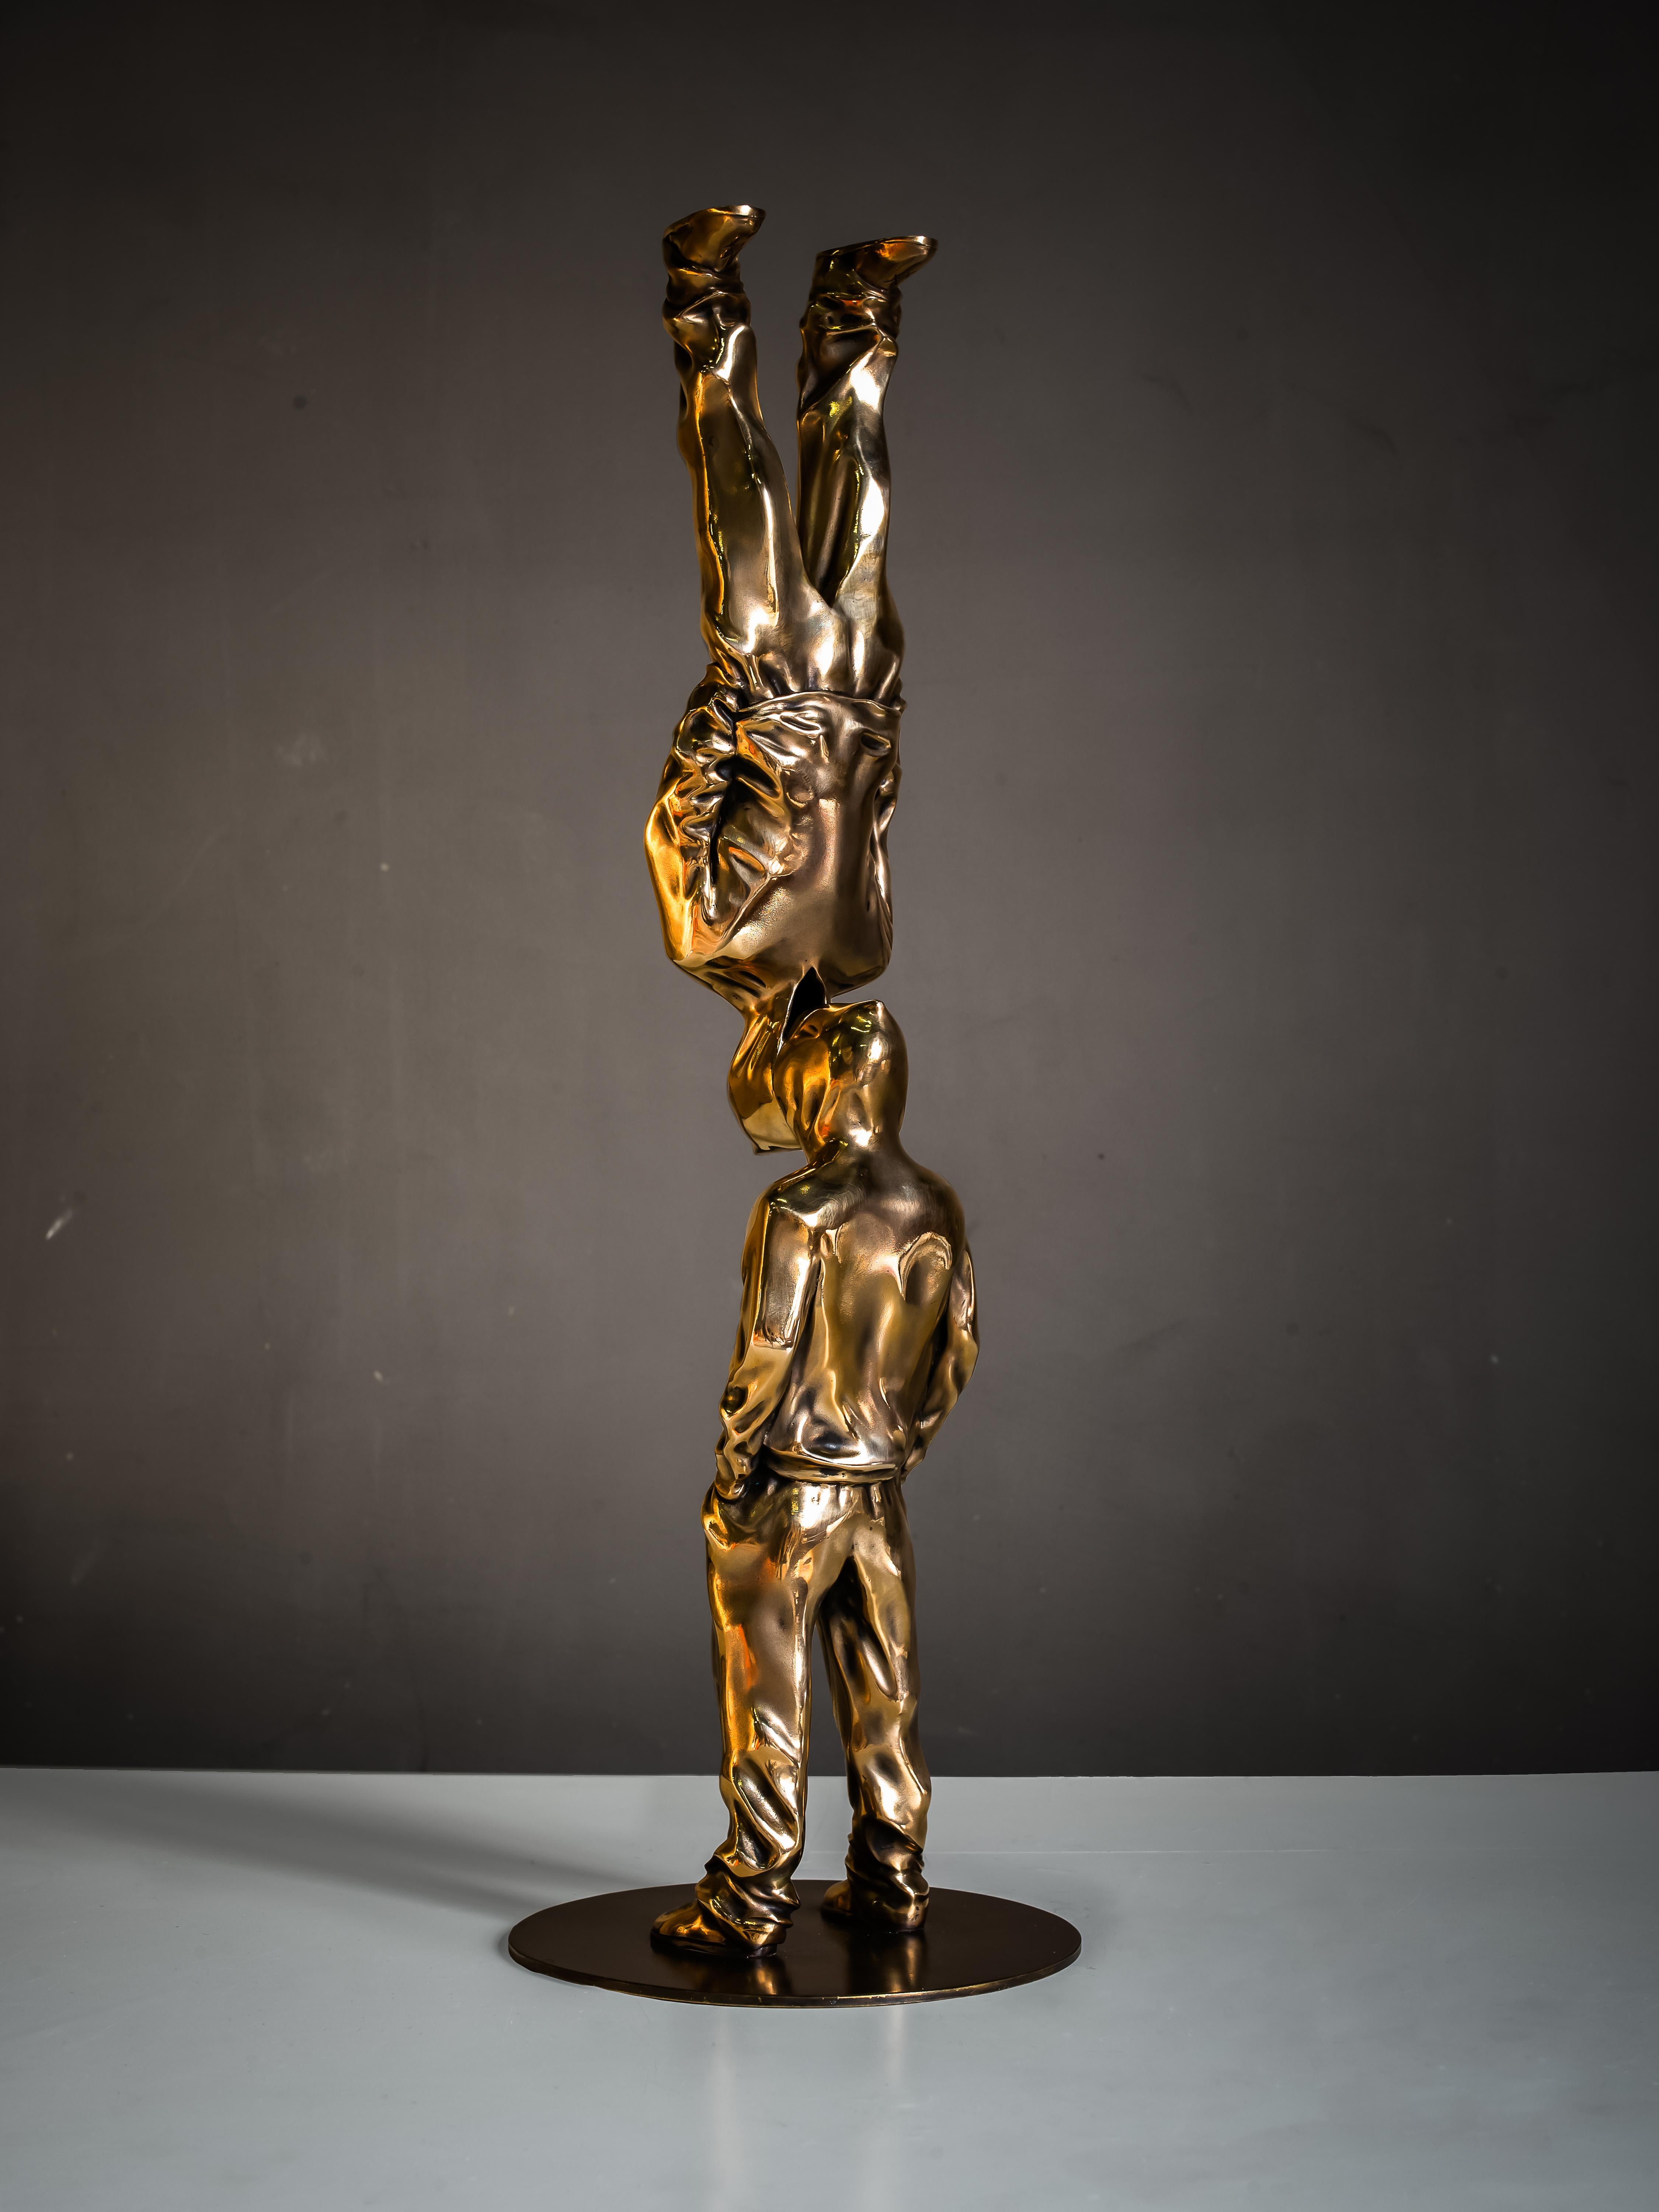 Sculpture en bronze Up Side Down de Huang Yulong, Édition 3/8

Up&Up
2018
Sculpture en bronze 
24" × 4" × 4" in
60 × 10 × 10 cm
Edition de 3/8

À PROPOS DE L'ARTISTE
Huang Yulong est né en 1983 dans la province d'Anhui, en Chine. En 2007, il a